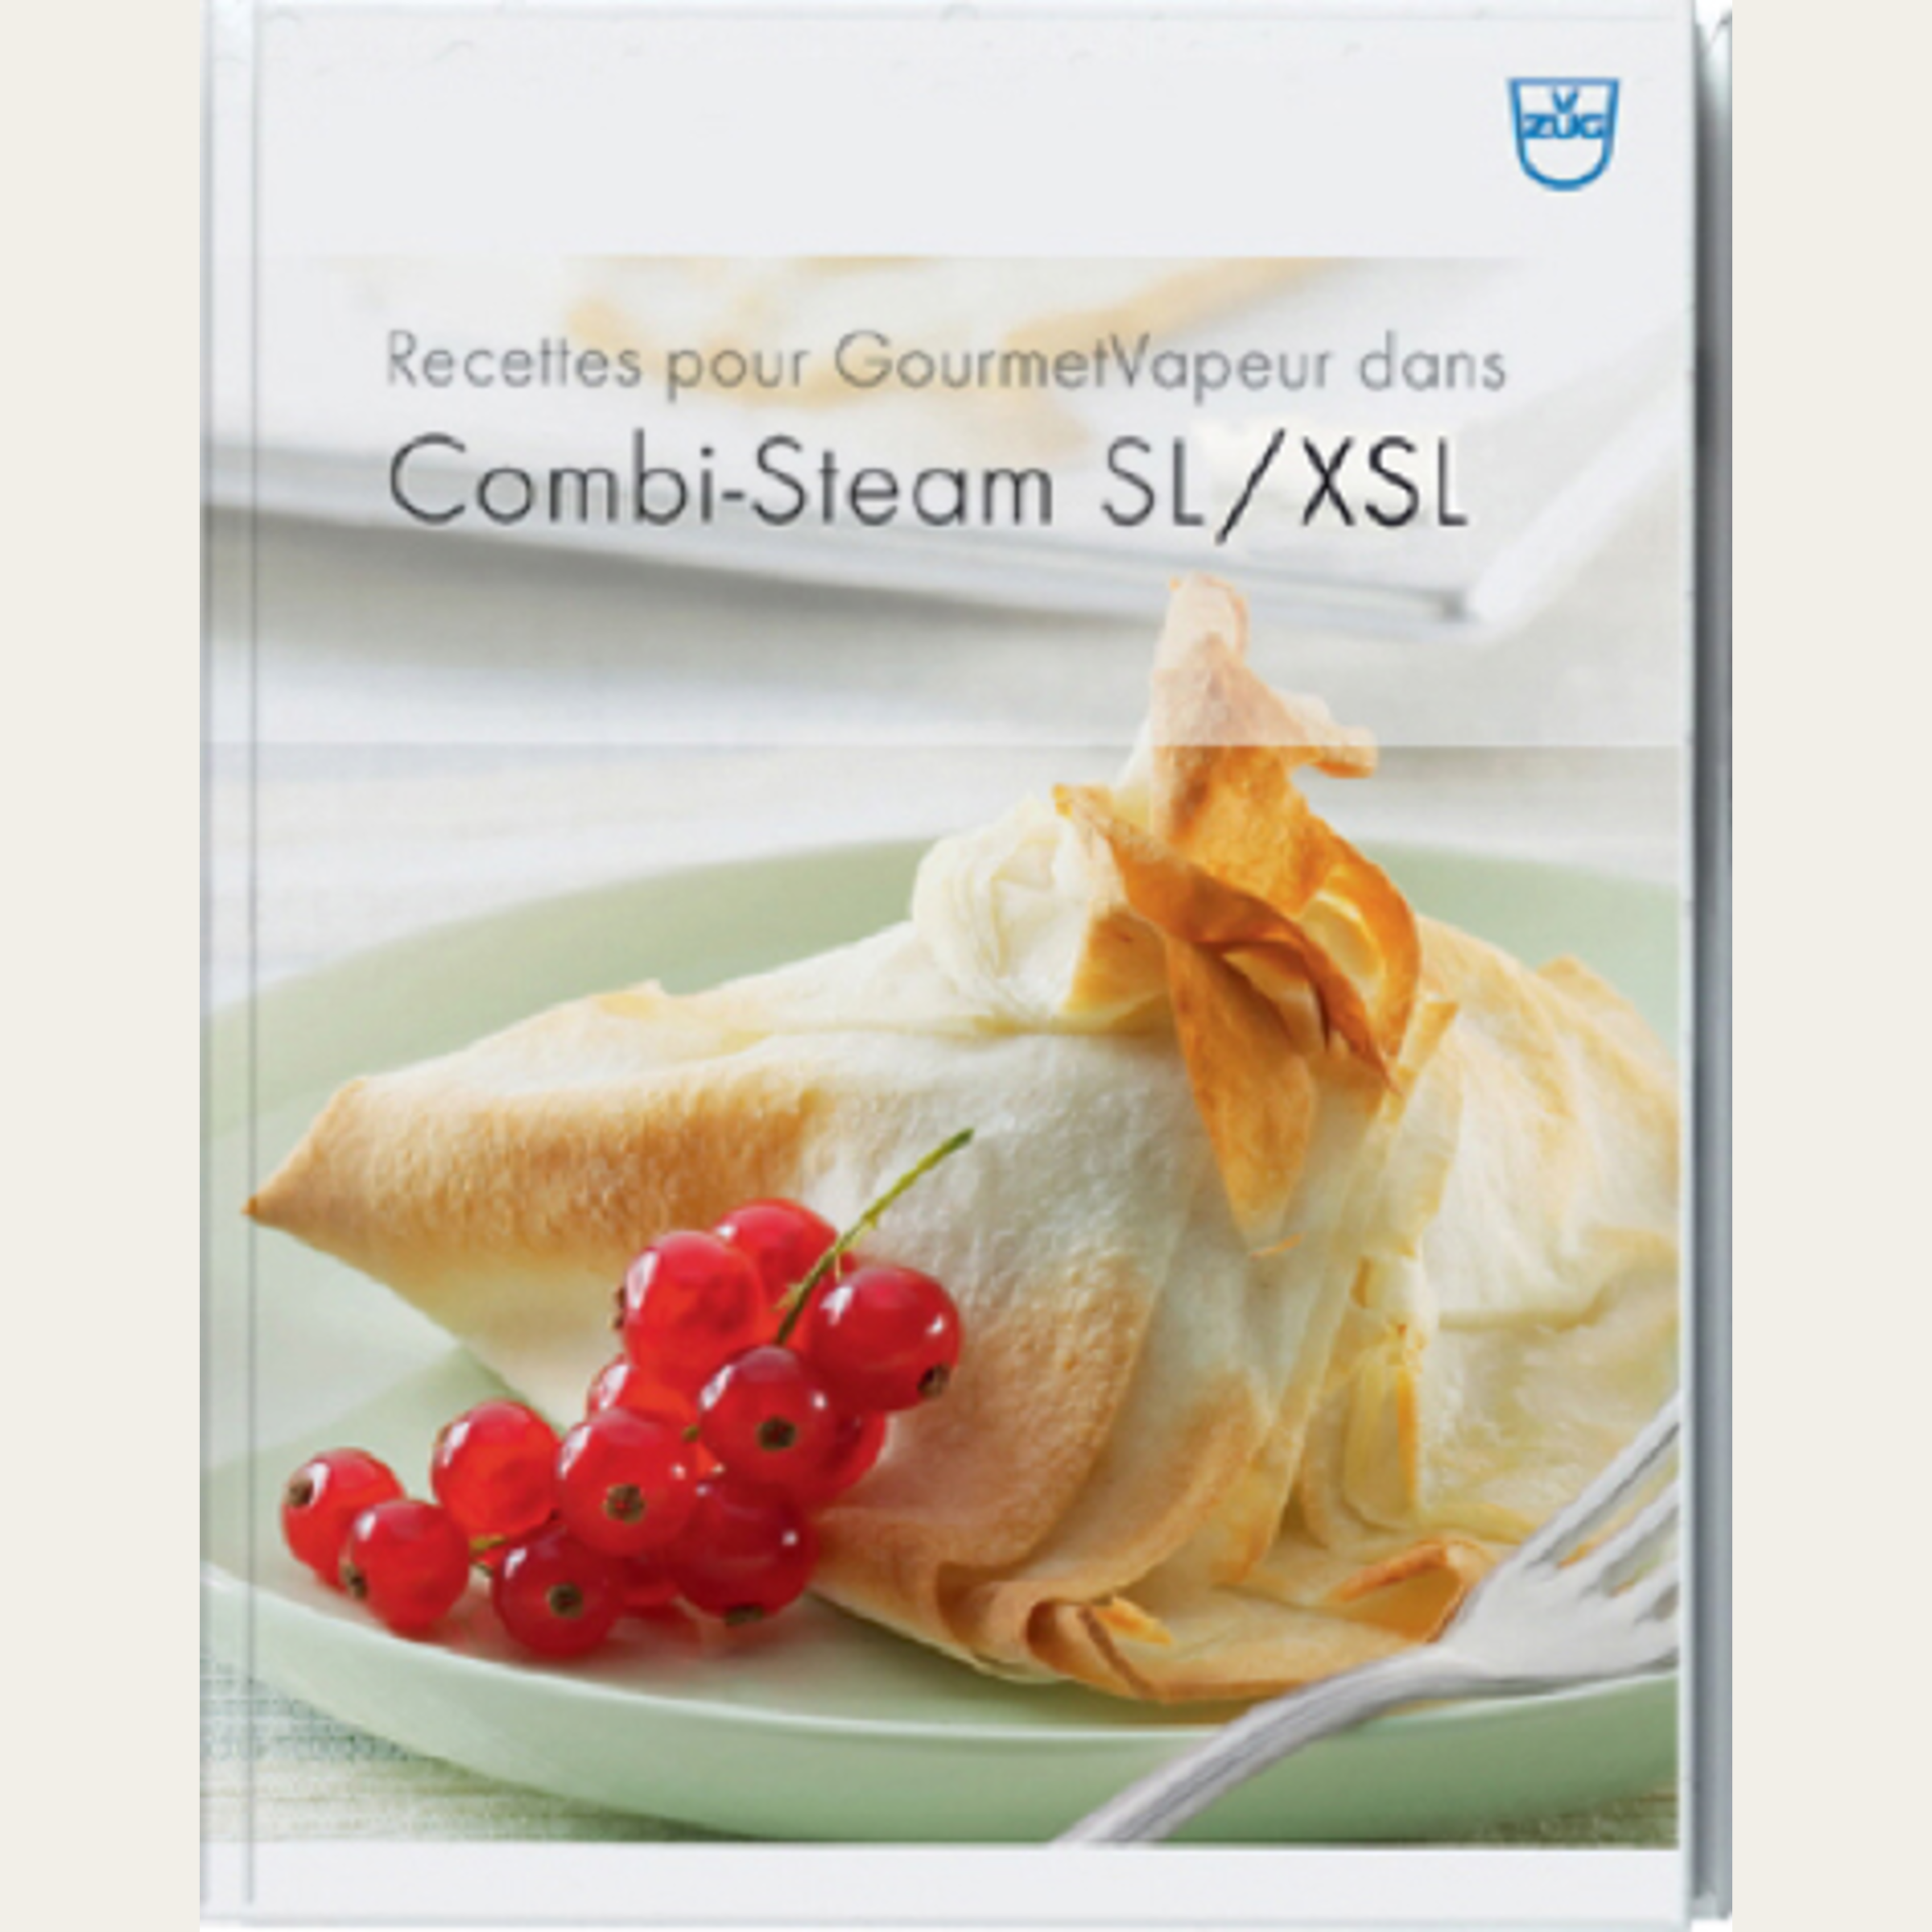 Livre de recettes GourmetVapeur, Combi-Steam SL/XSL, francais